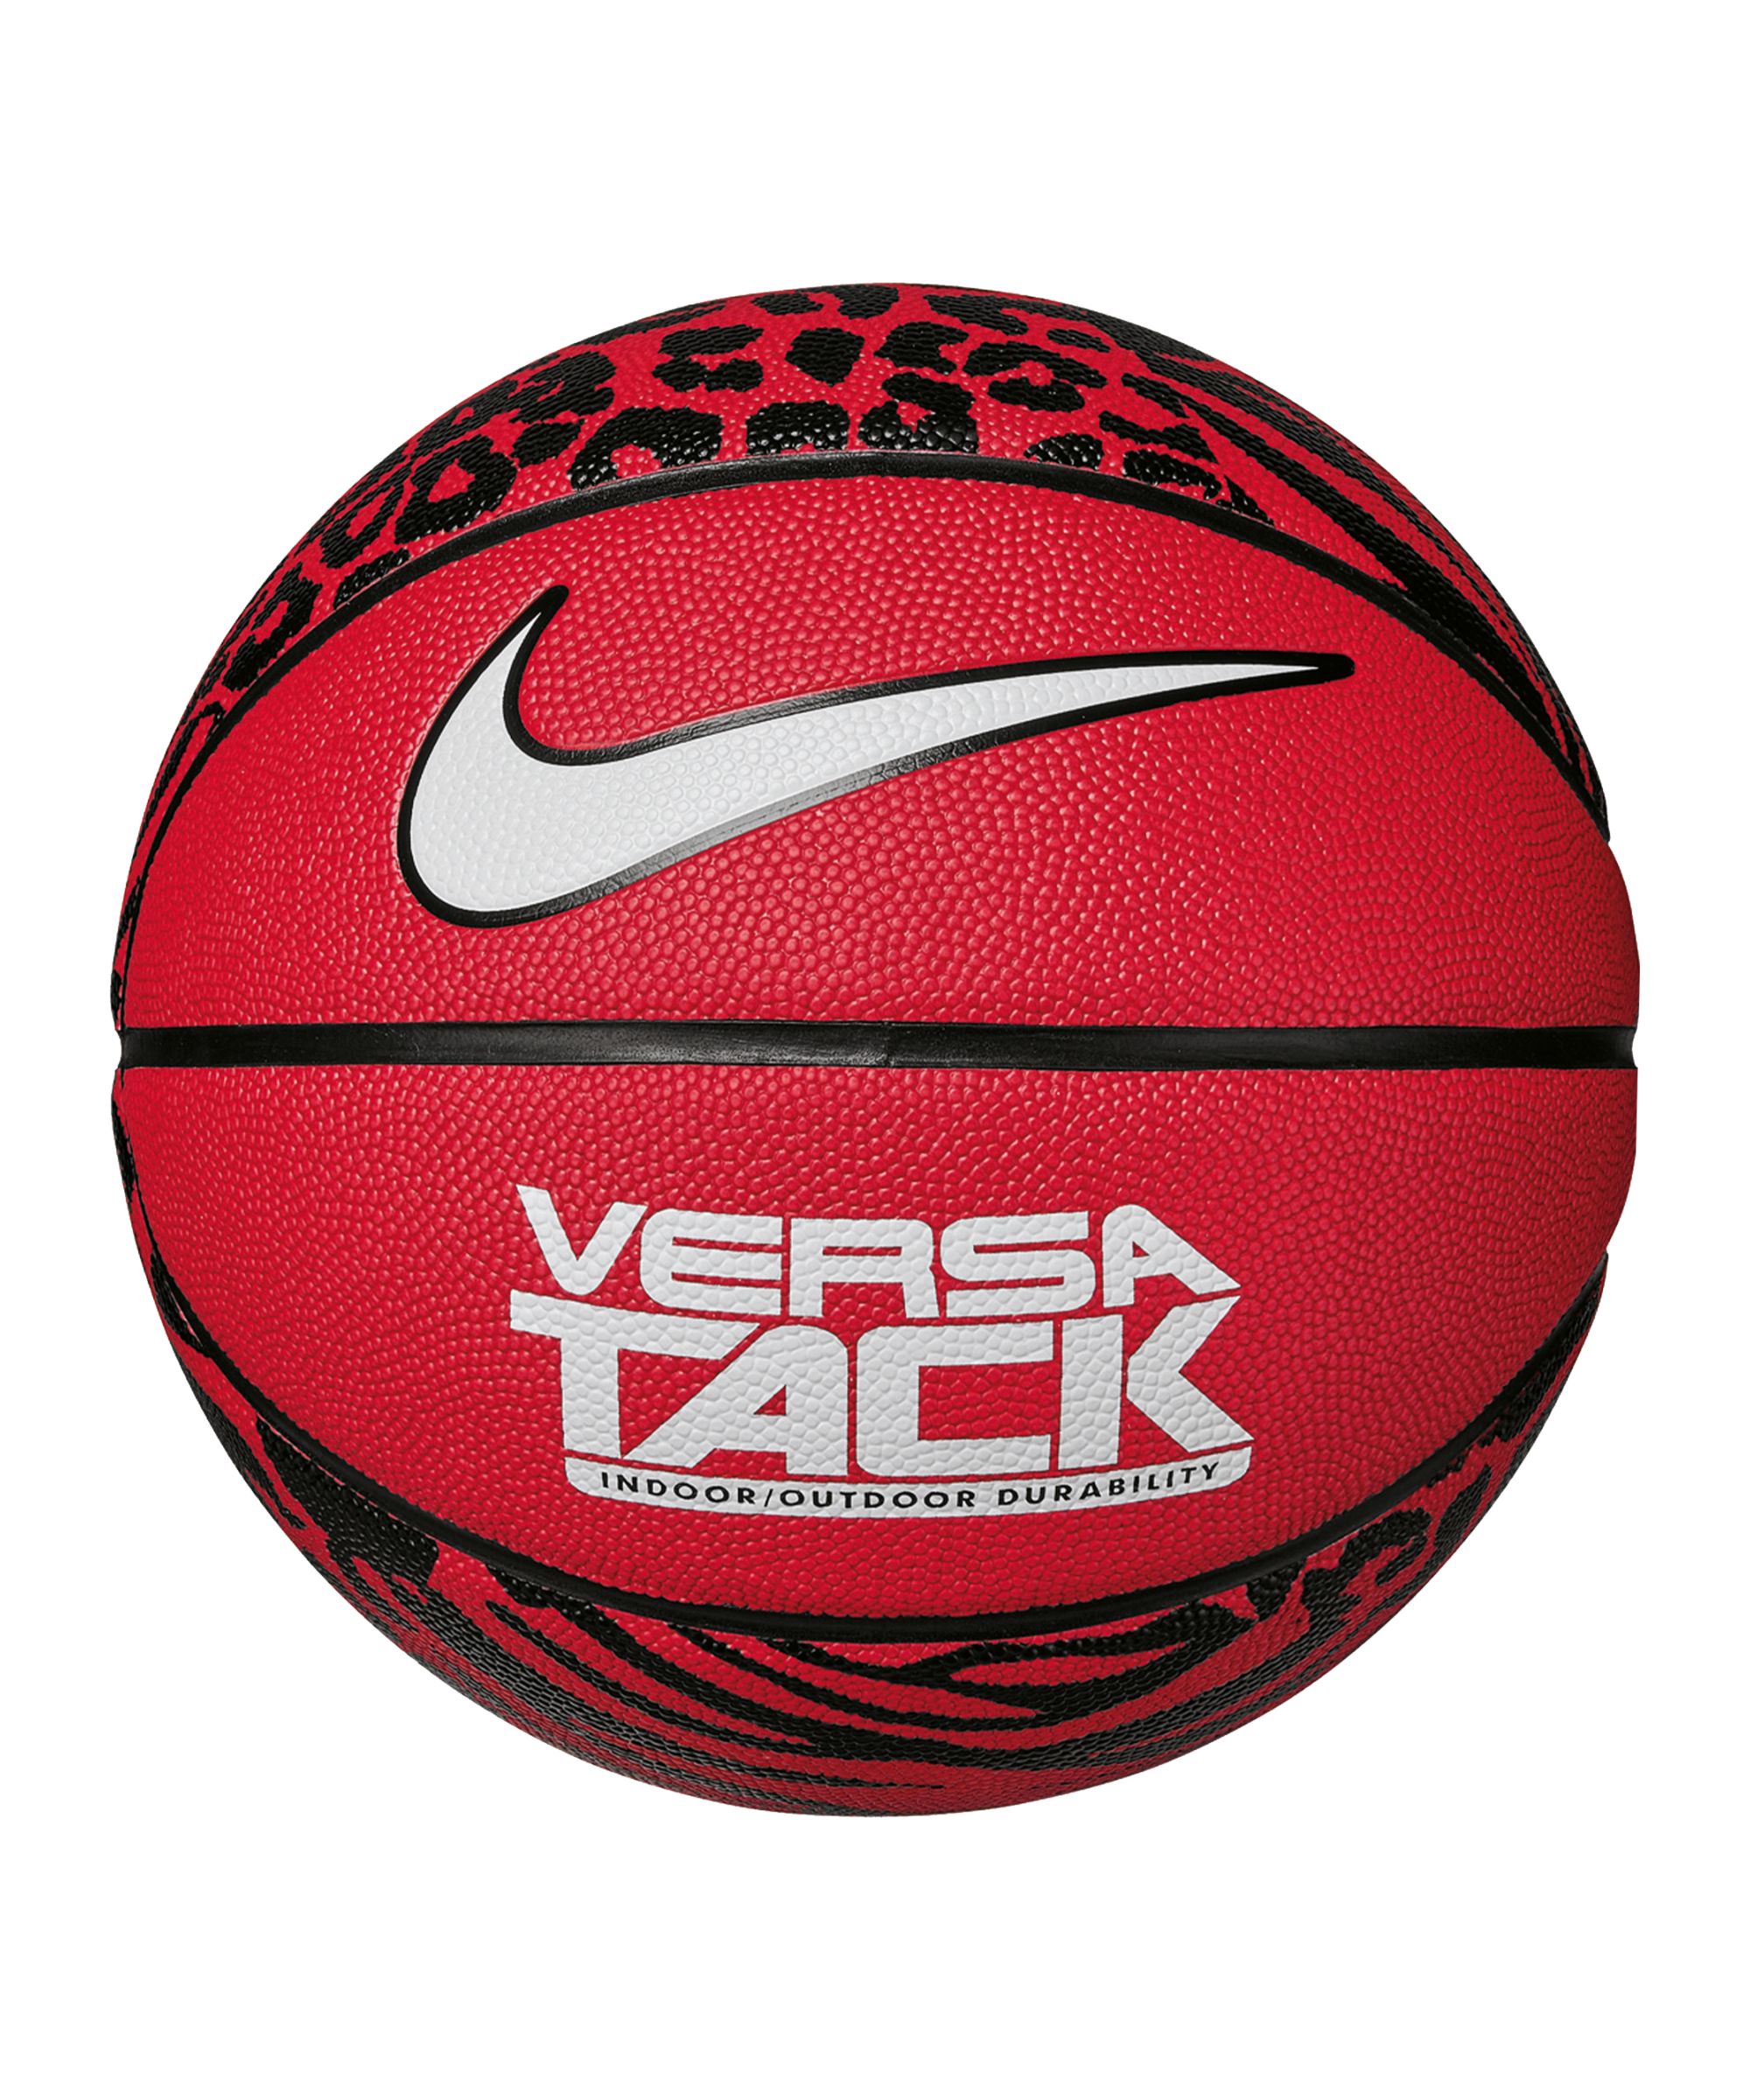 Μπάλα Nike Versa Tack Basketball